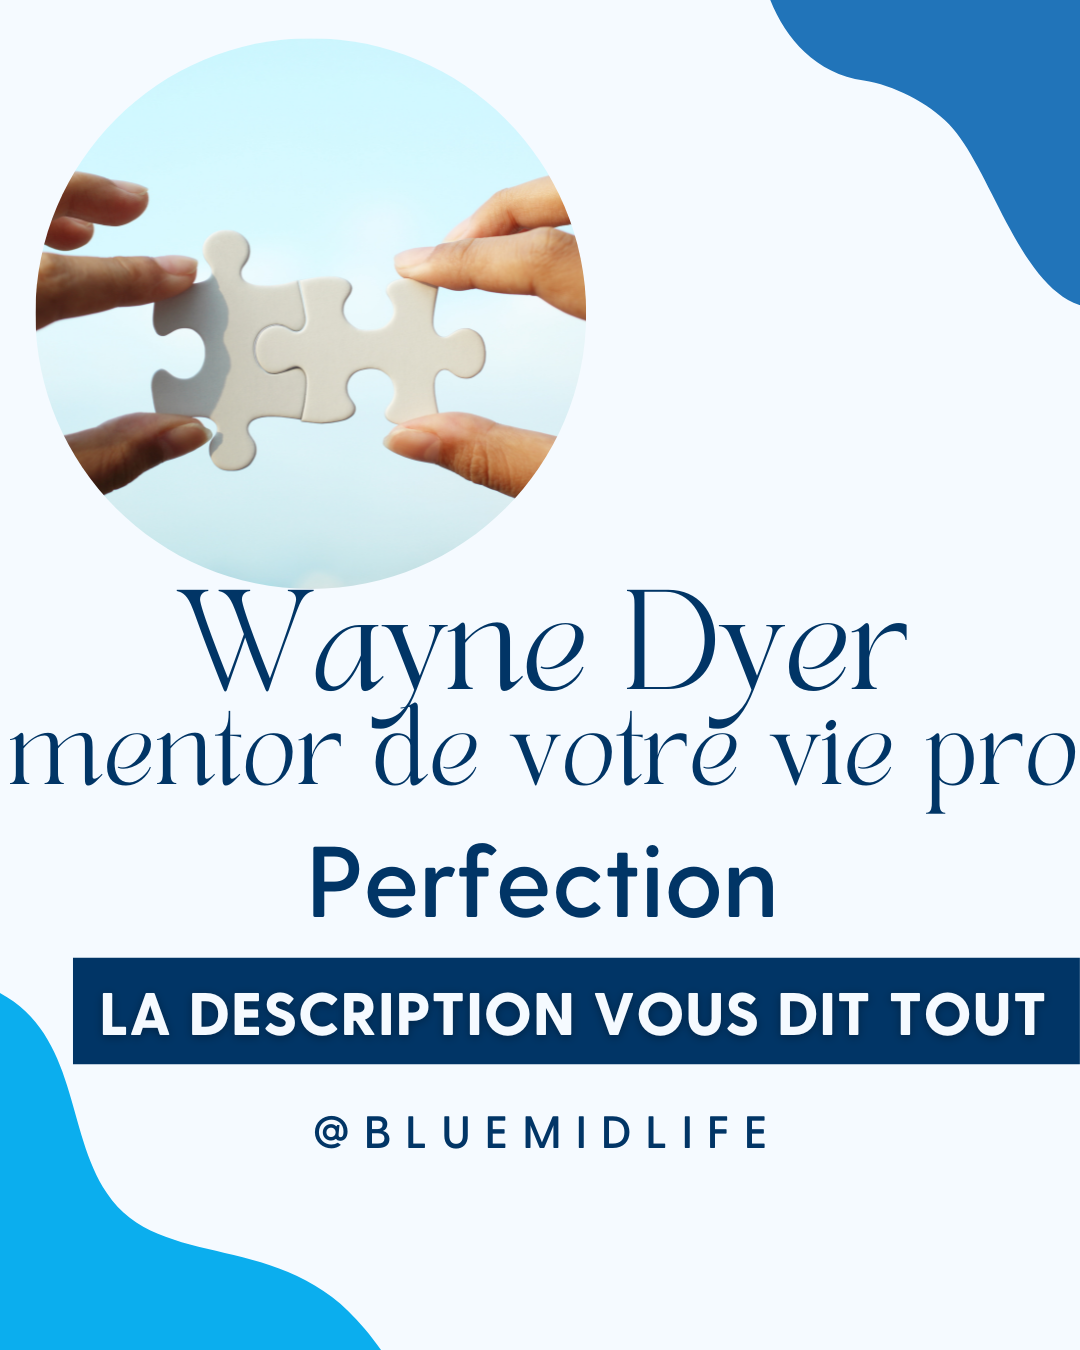 Wayne Dyer mentor de votre vie pro : Perfection